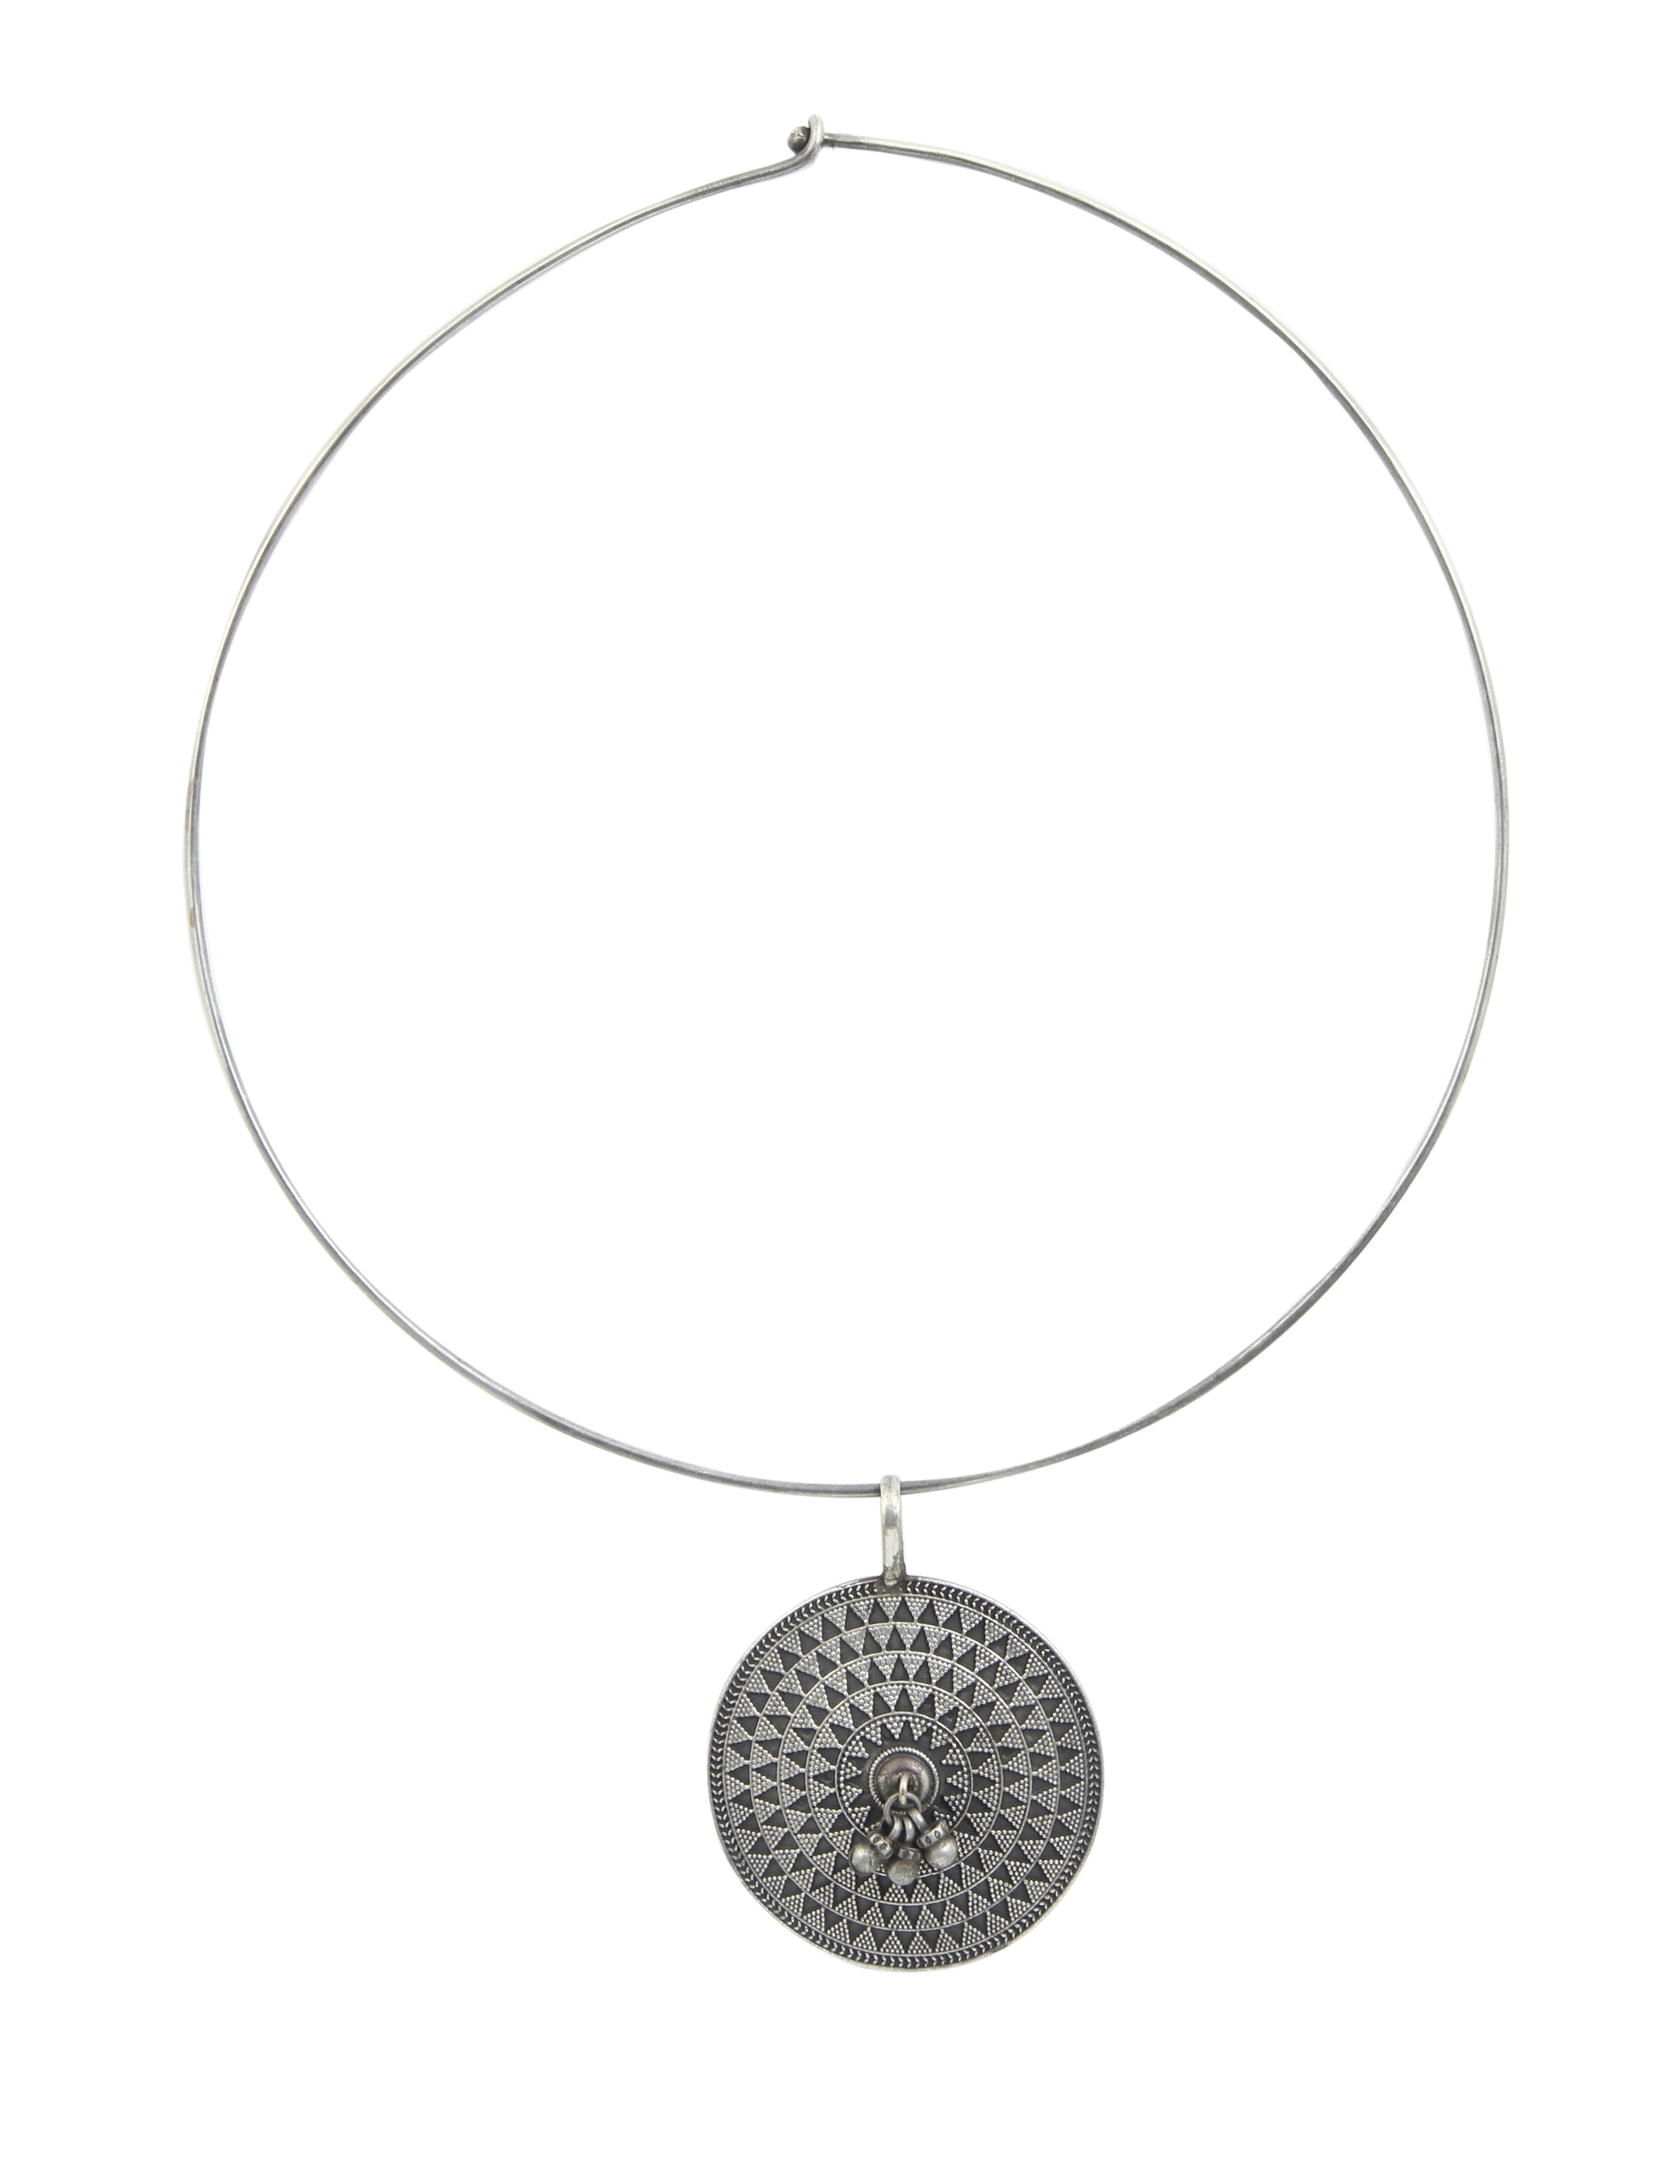 Tiara Jewellery German Silver Pendant II Necklace with Round Ring For Women II Oxidised Pendant II Oxidised Necklace II Oxidised Jewellery II Bridal Jewellery II Office Wear || Girls & Women